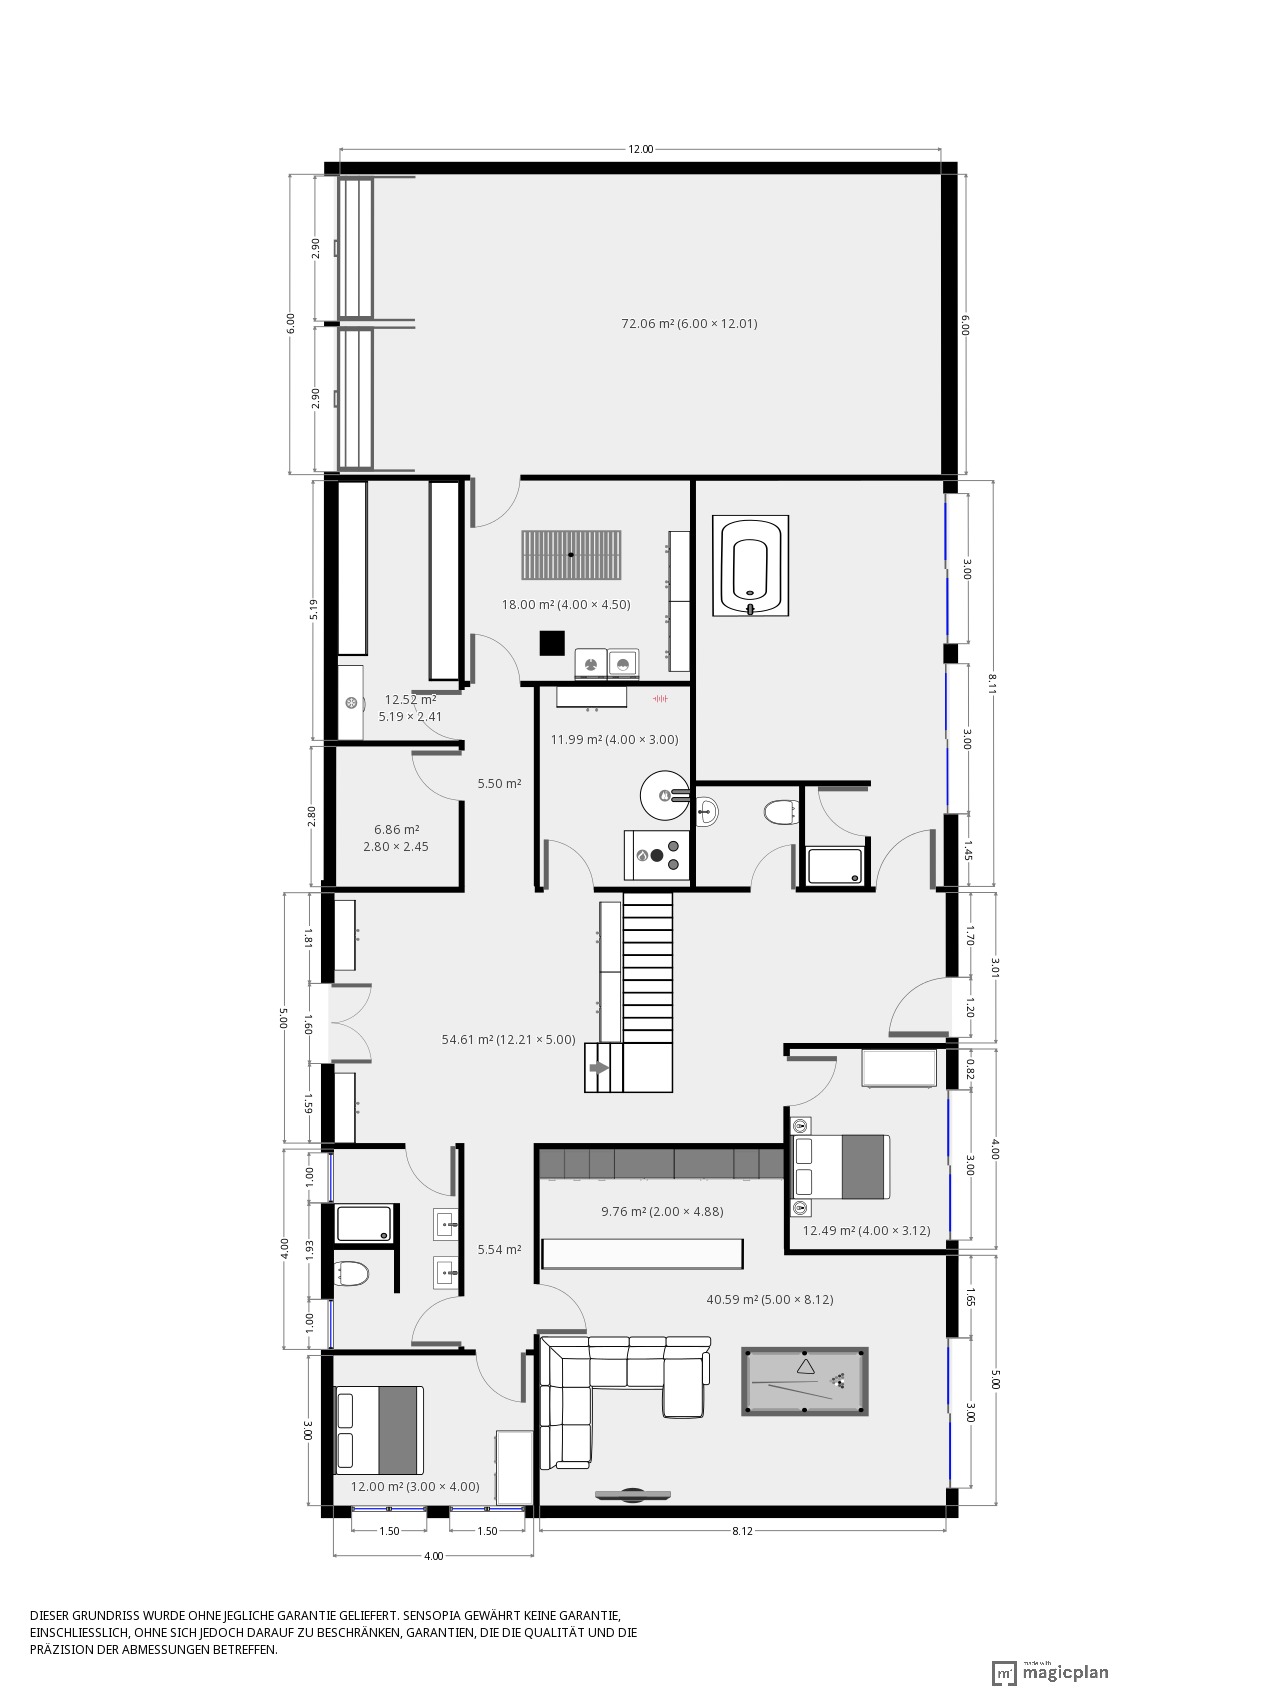 blockhaus-mit-krueppelwalmdach-am-wald-planung-verbessern-265303-1.JPG